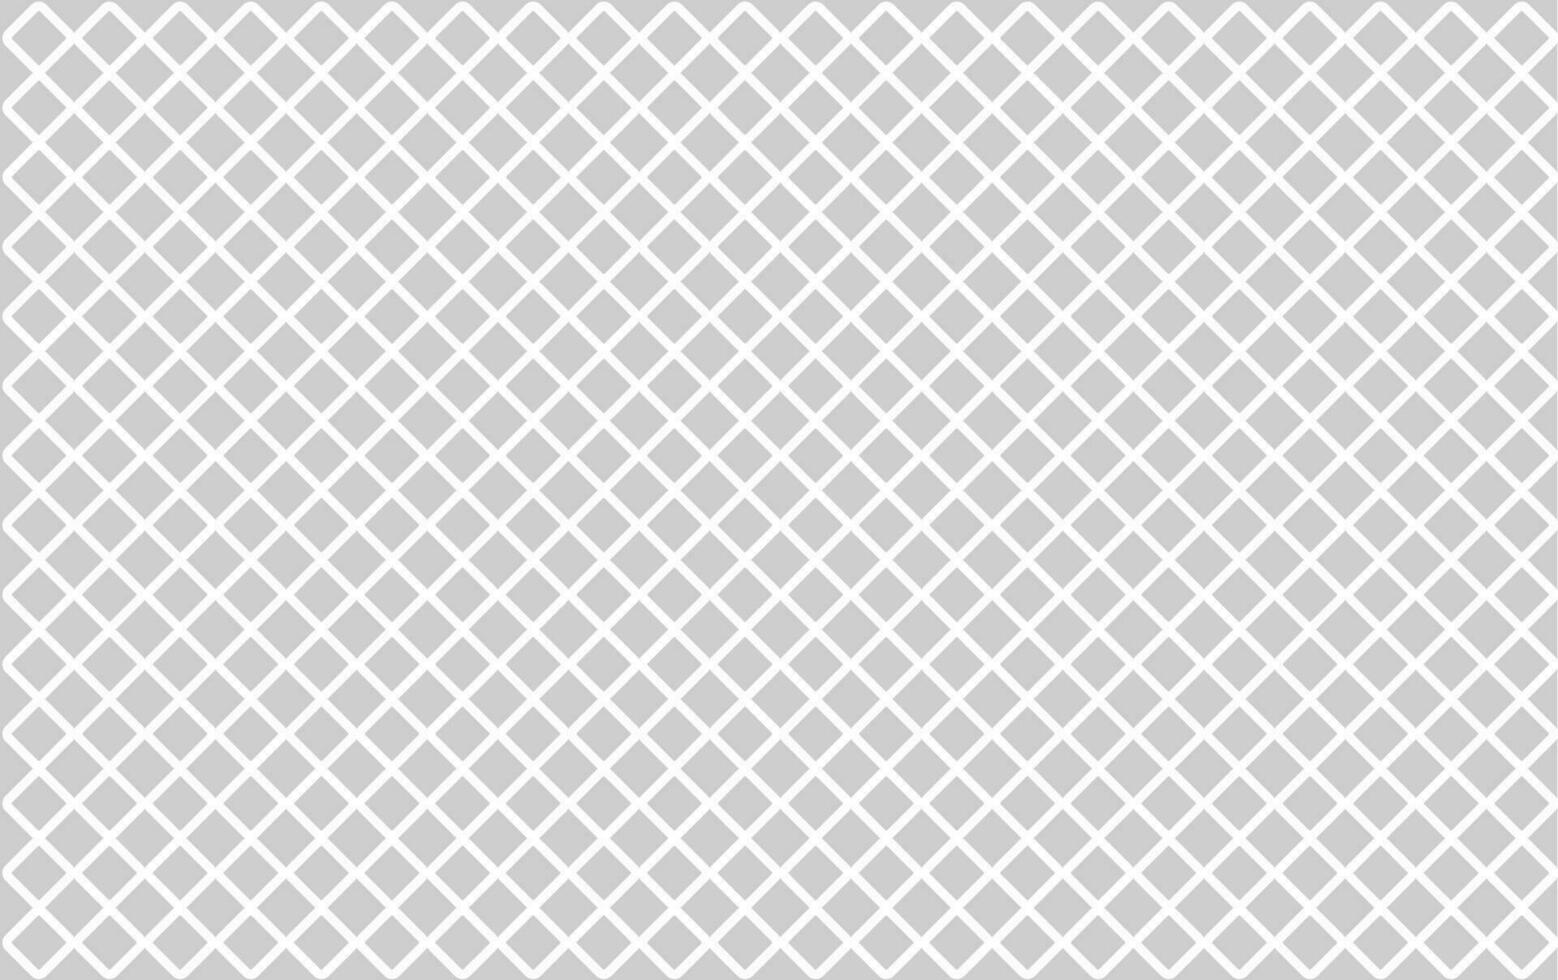 tyg modern minimal mönster bakgrund. geometrisk diamant bricka minimal mönster. sömlös textur. kvadrater diagonal rektangulär, rektangel rutnät, maska Graf papper mönster. 45 grad förslag vektor